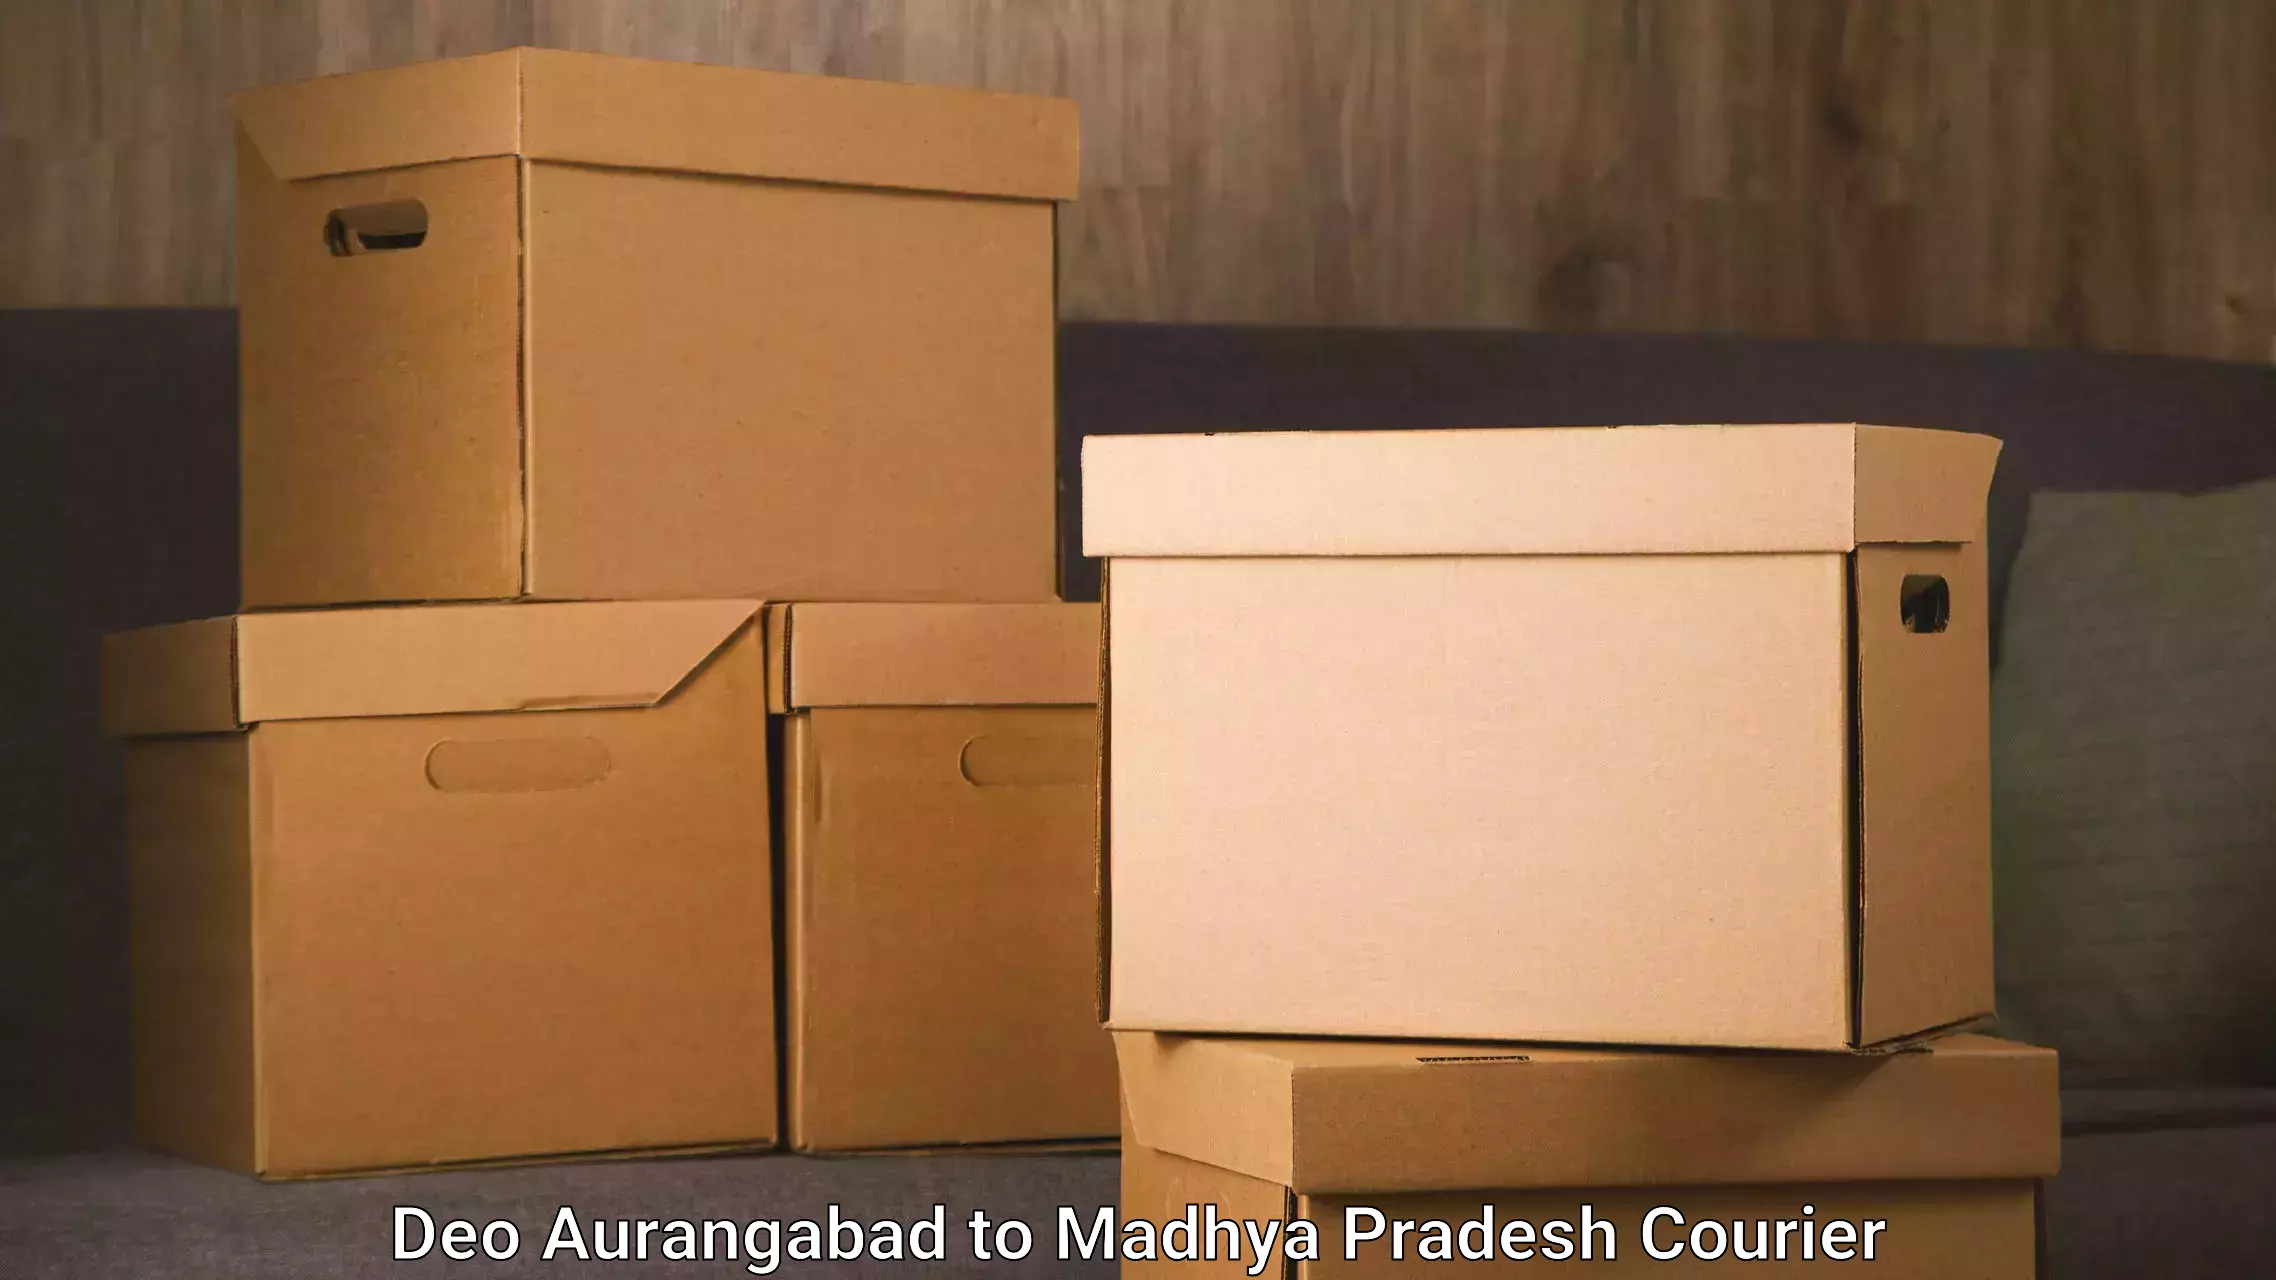 Door-to-door relocation services Deo Aurangabad to IIIT Bhopal